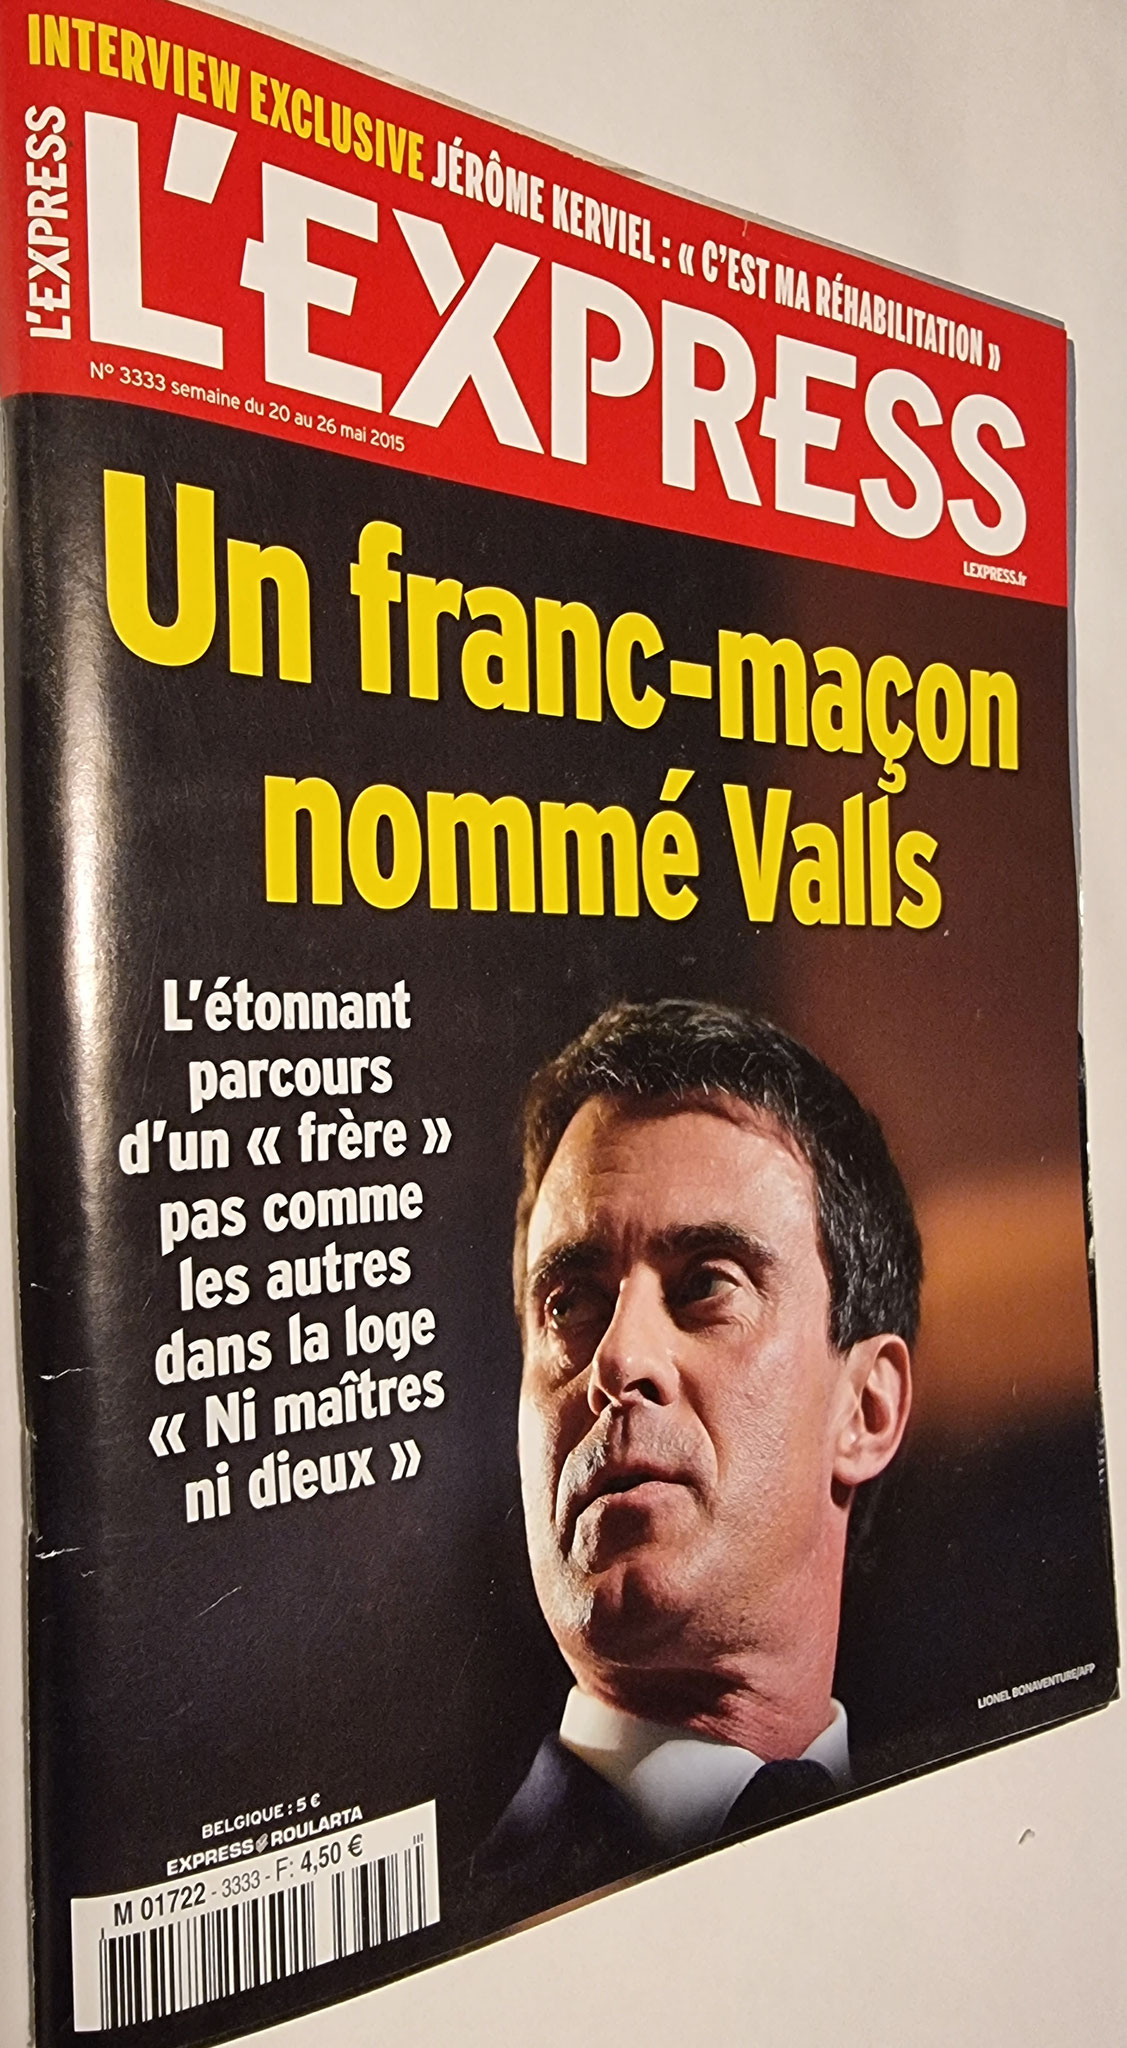 l'Epress Un Franc-maçon nommé Valls